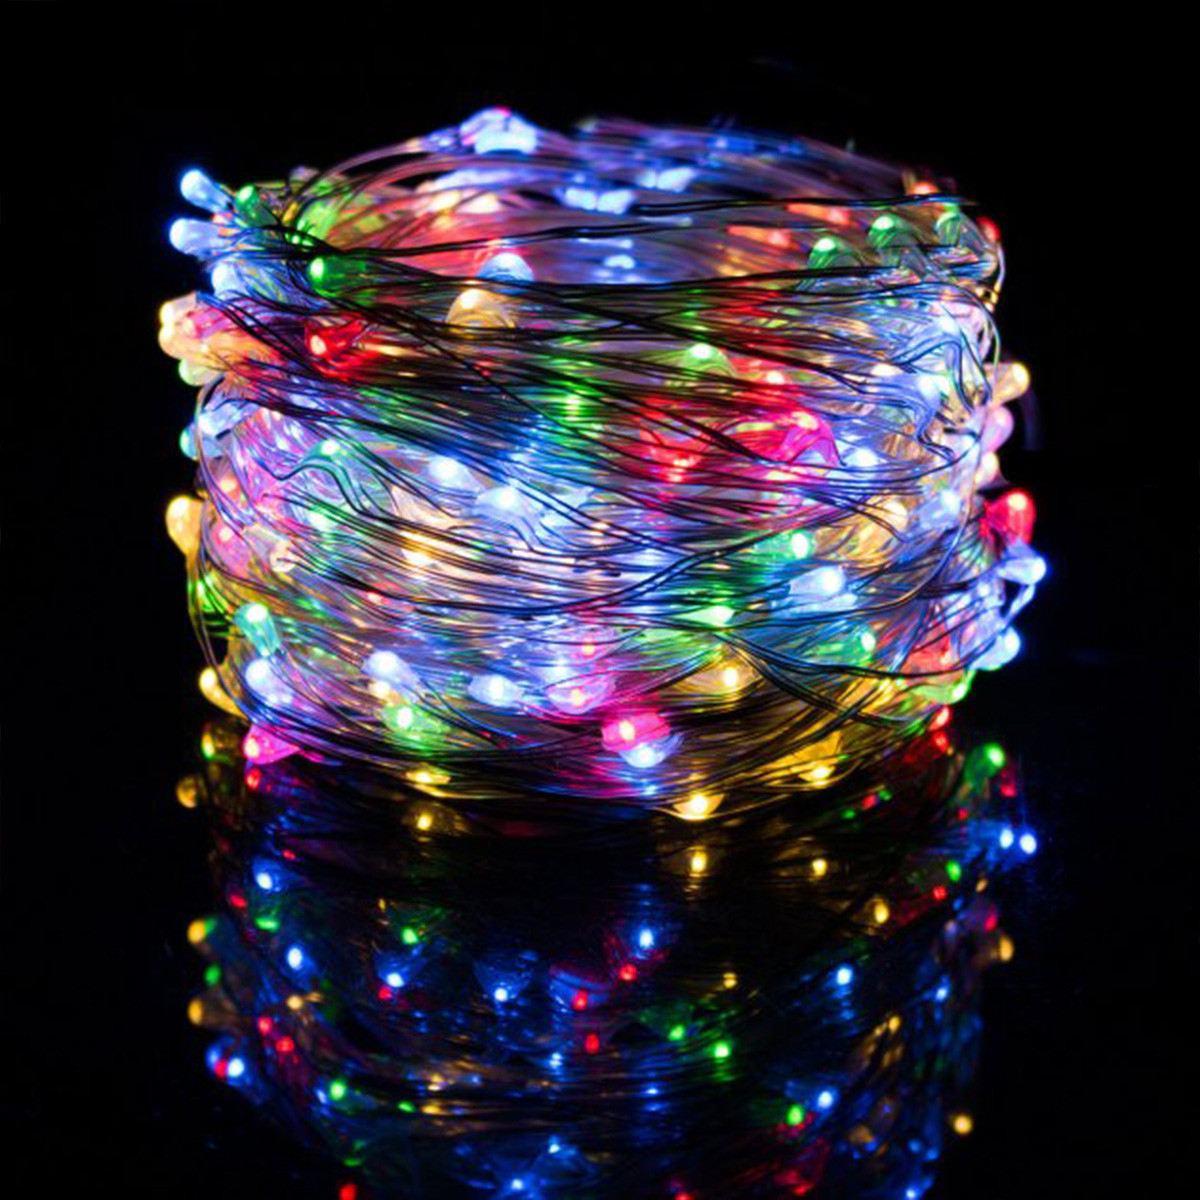 Новорічна гірлянда "Роса" нитка 10 м (світло різнобарвне) гарне святкове освітлення інтер'єру RV106-М house